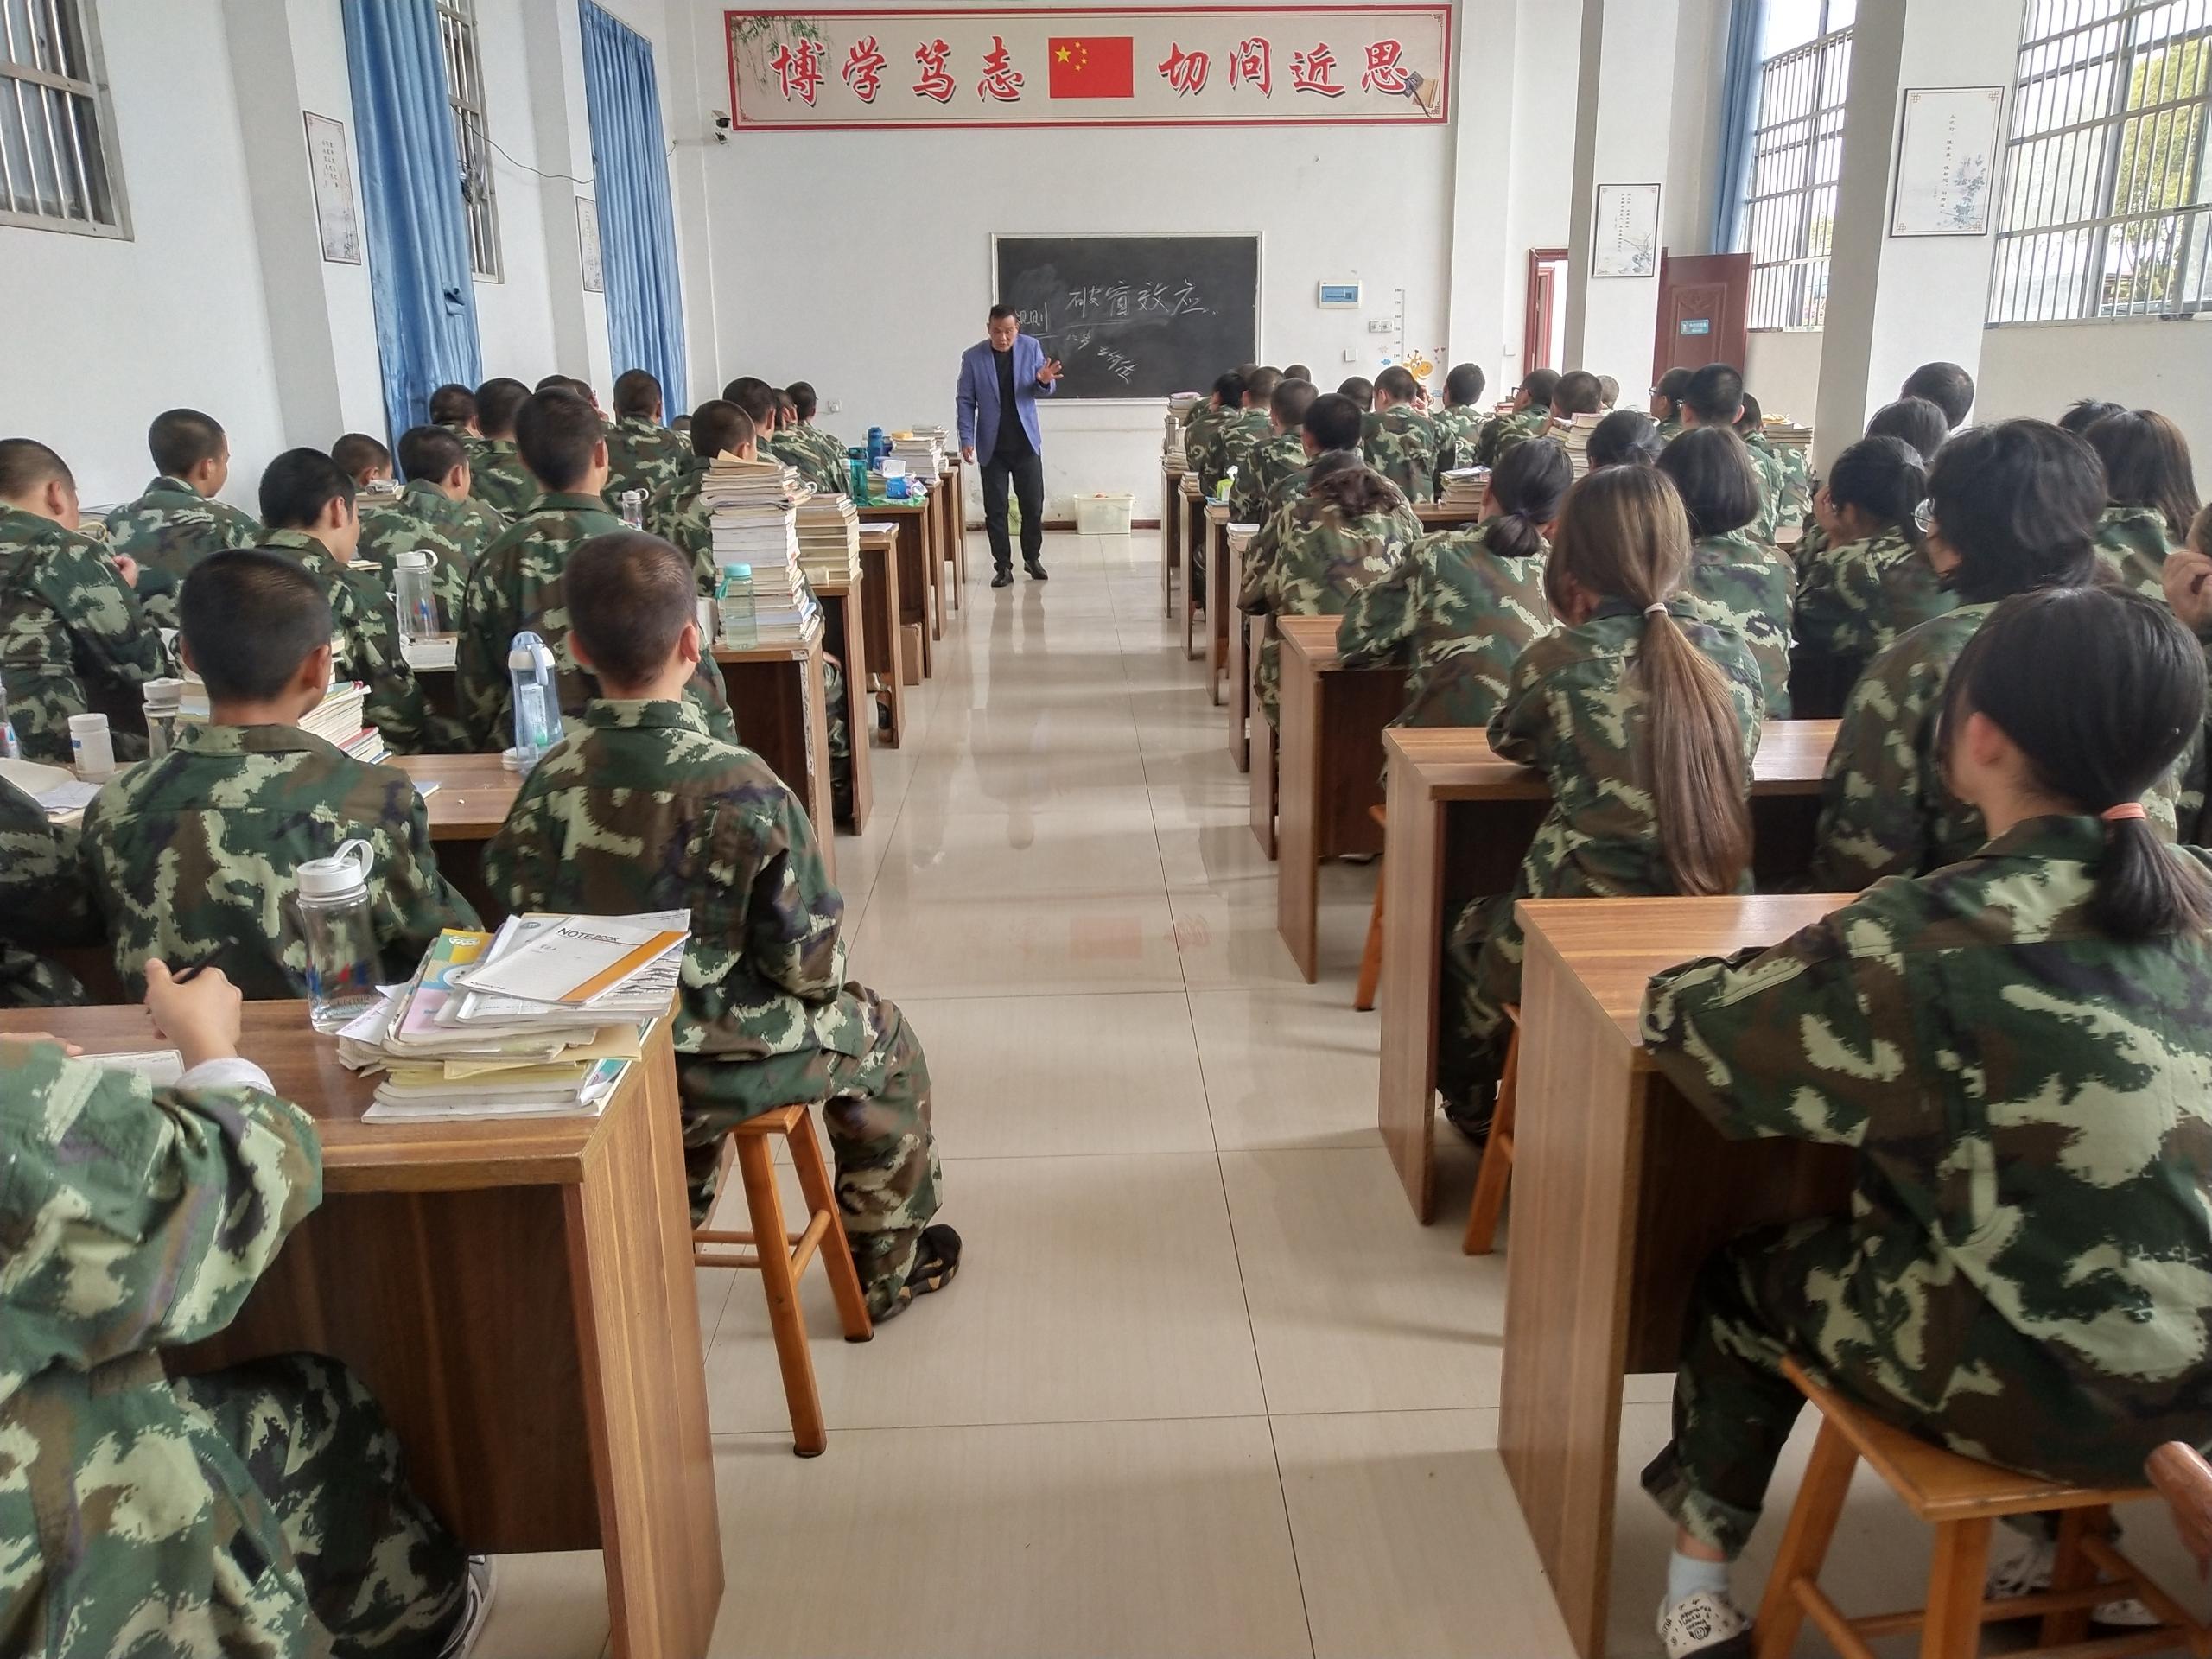 汉阳区少管所学费 荆州叛逆教育咨询六个月成功蜕变